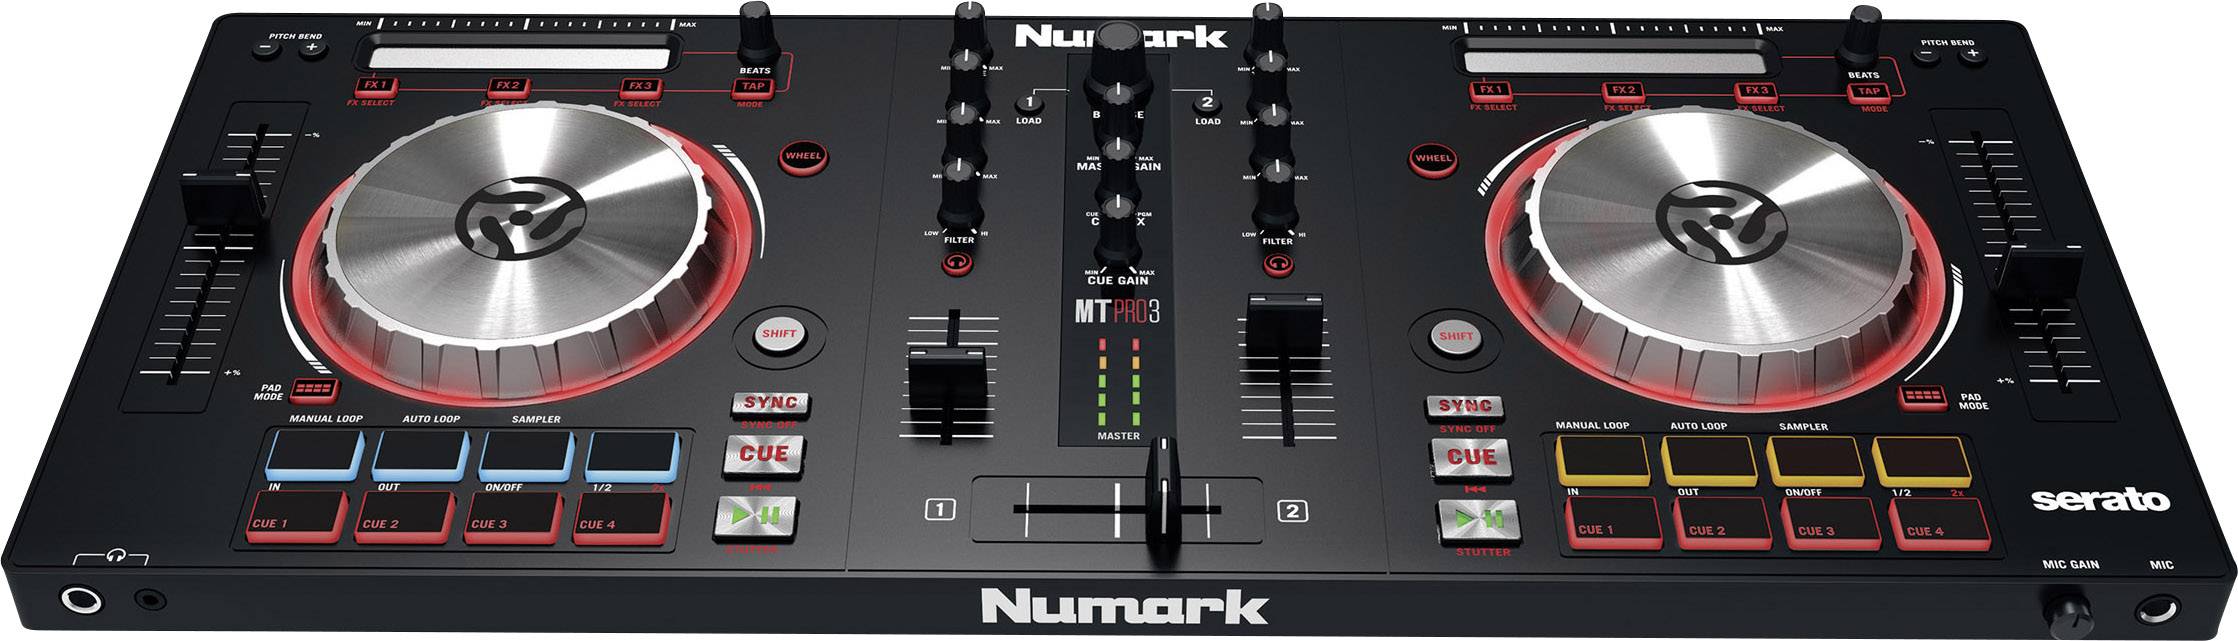 Numark MIXTRACK PRO III DJ kontrolér | Conrad.cz